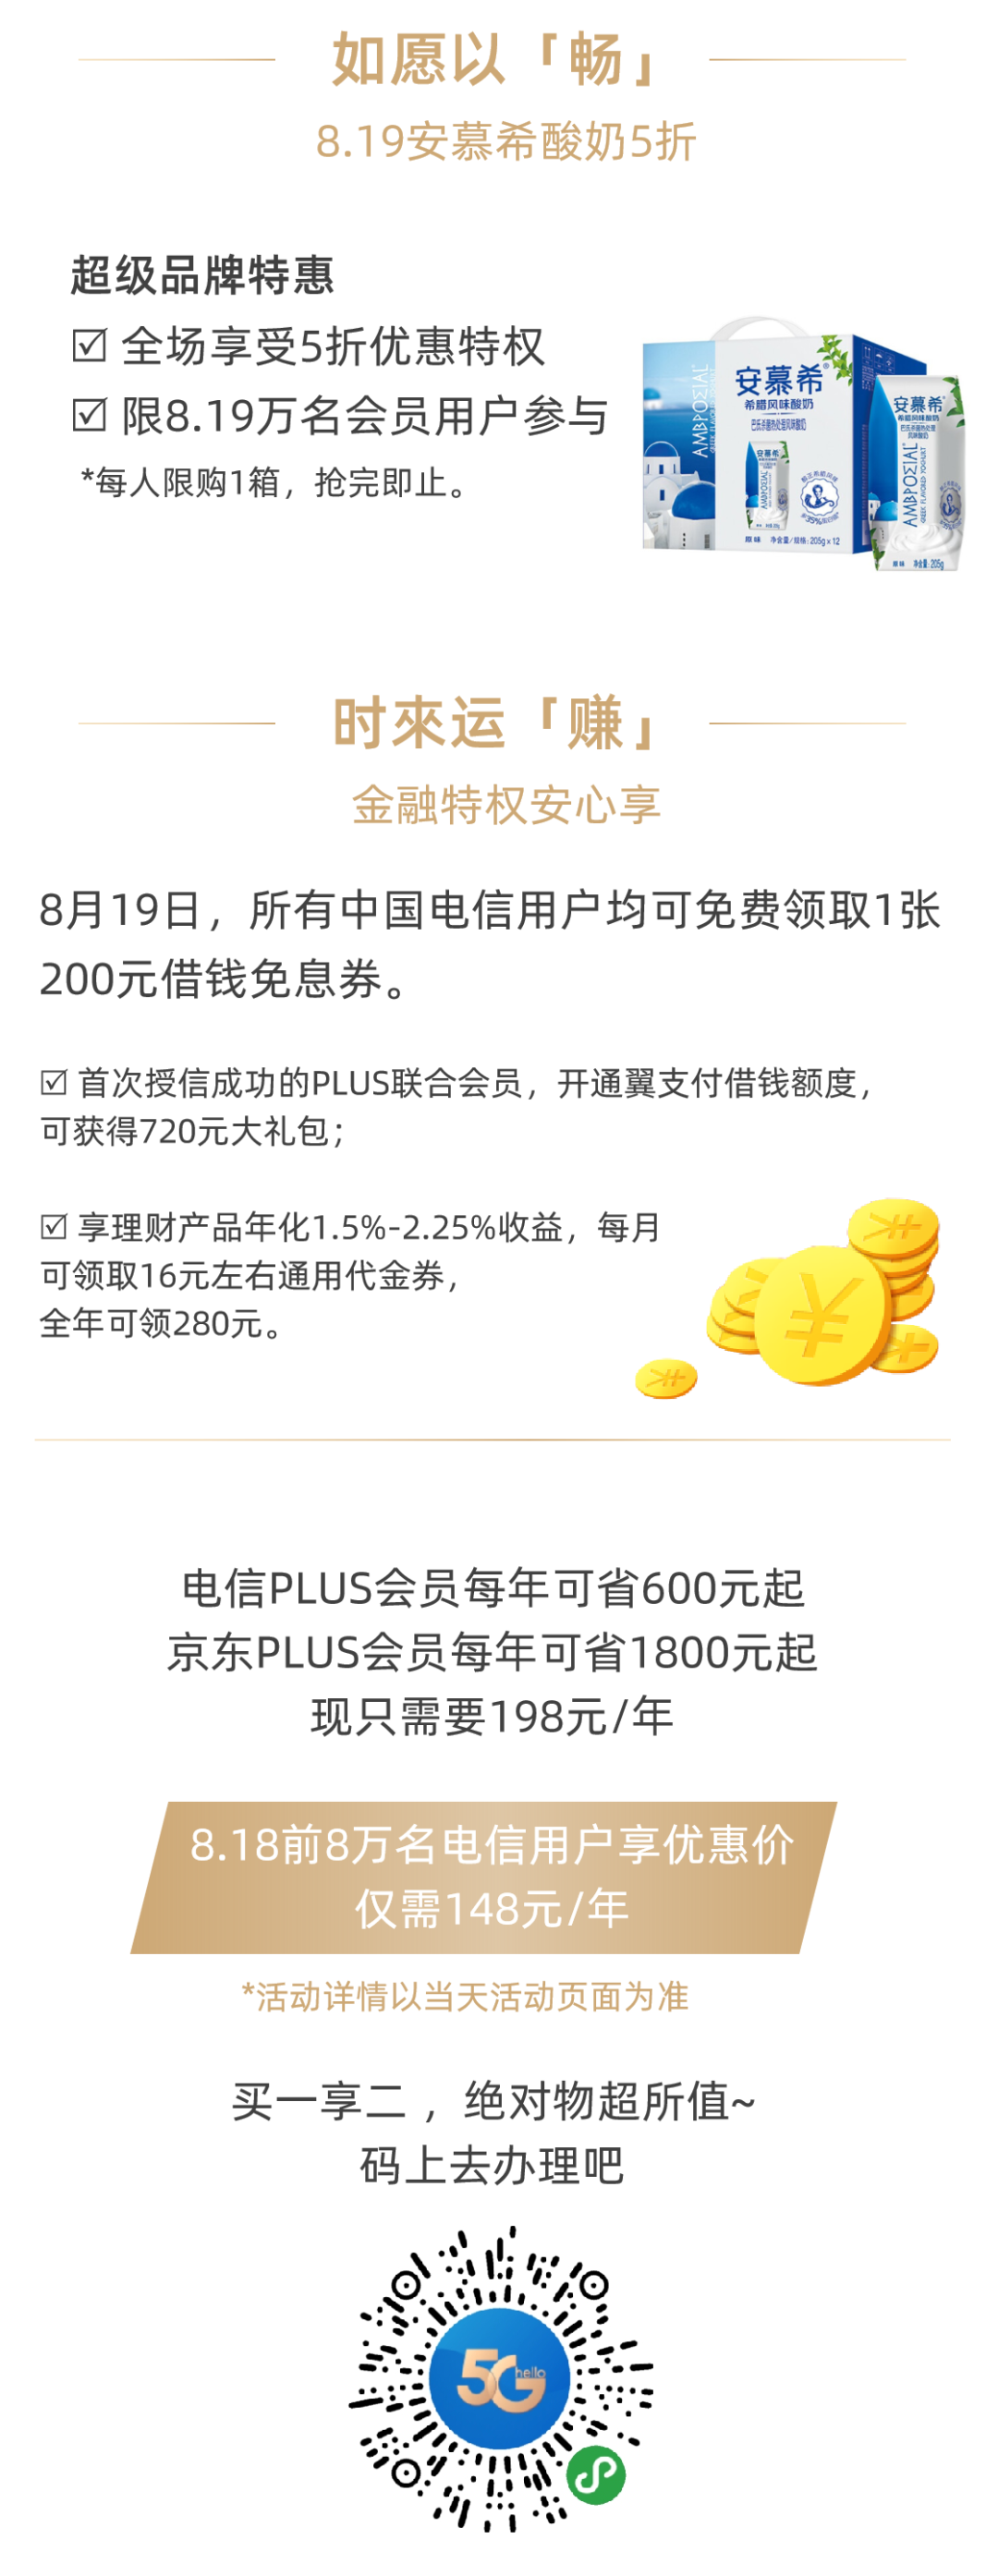 8.18日当天8万名电信翼支付+京东plus 联合会员仅需148元/年-惠小助(52huixz.com)